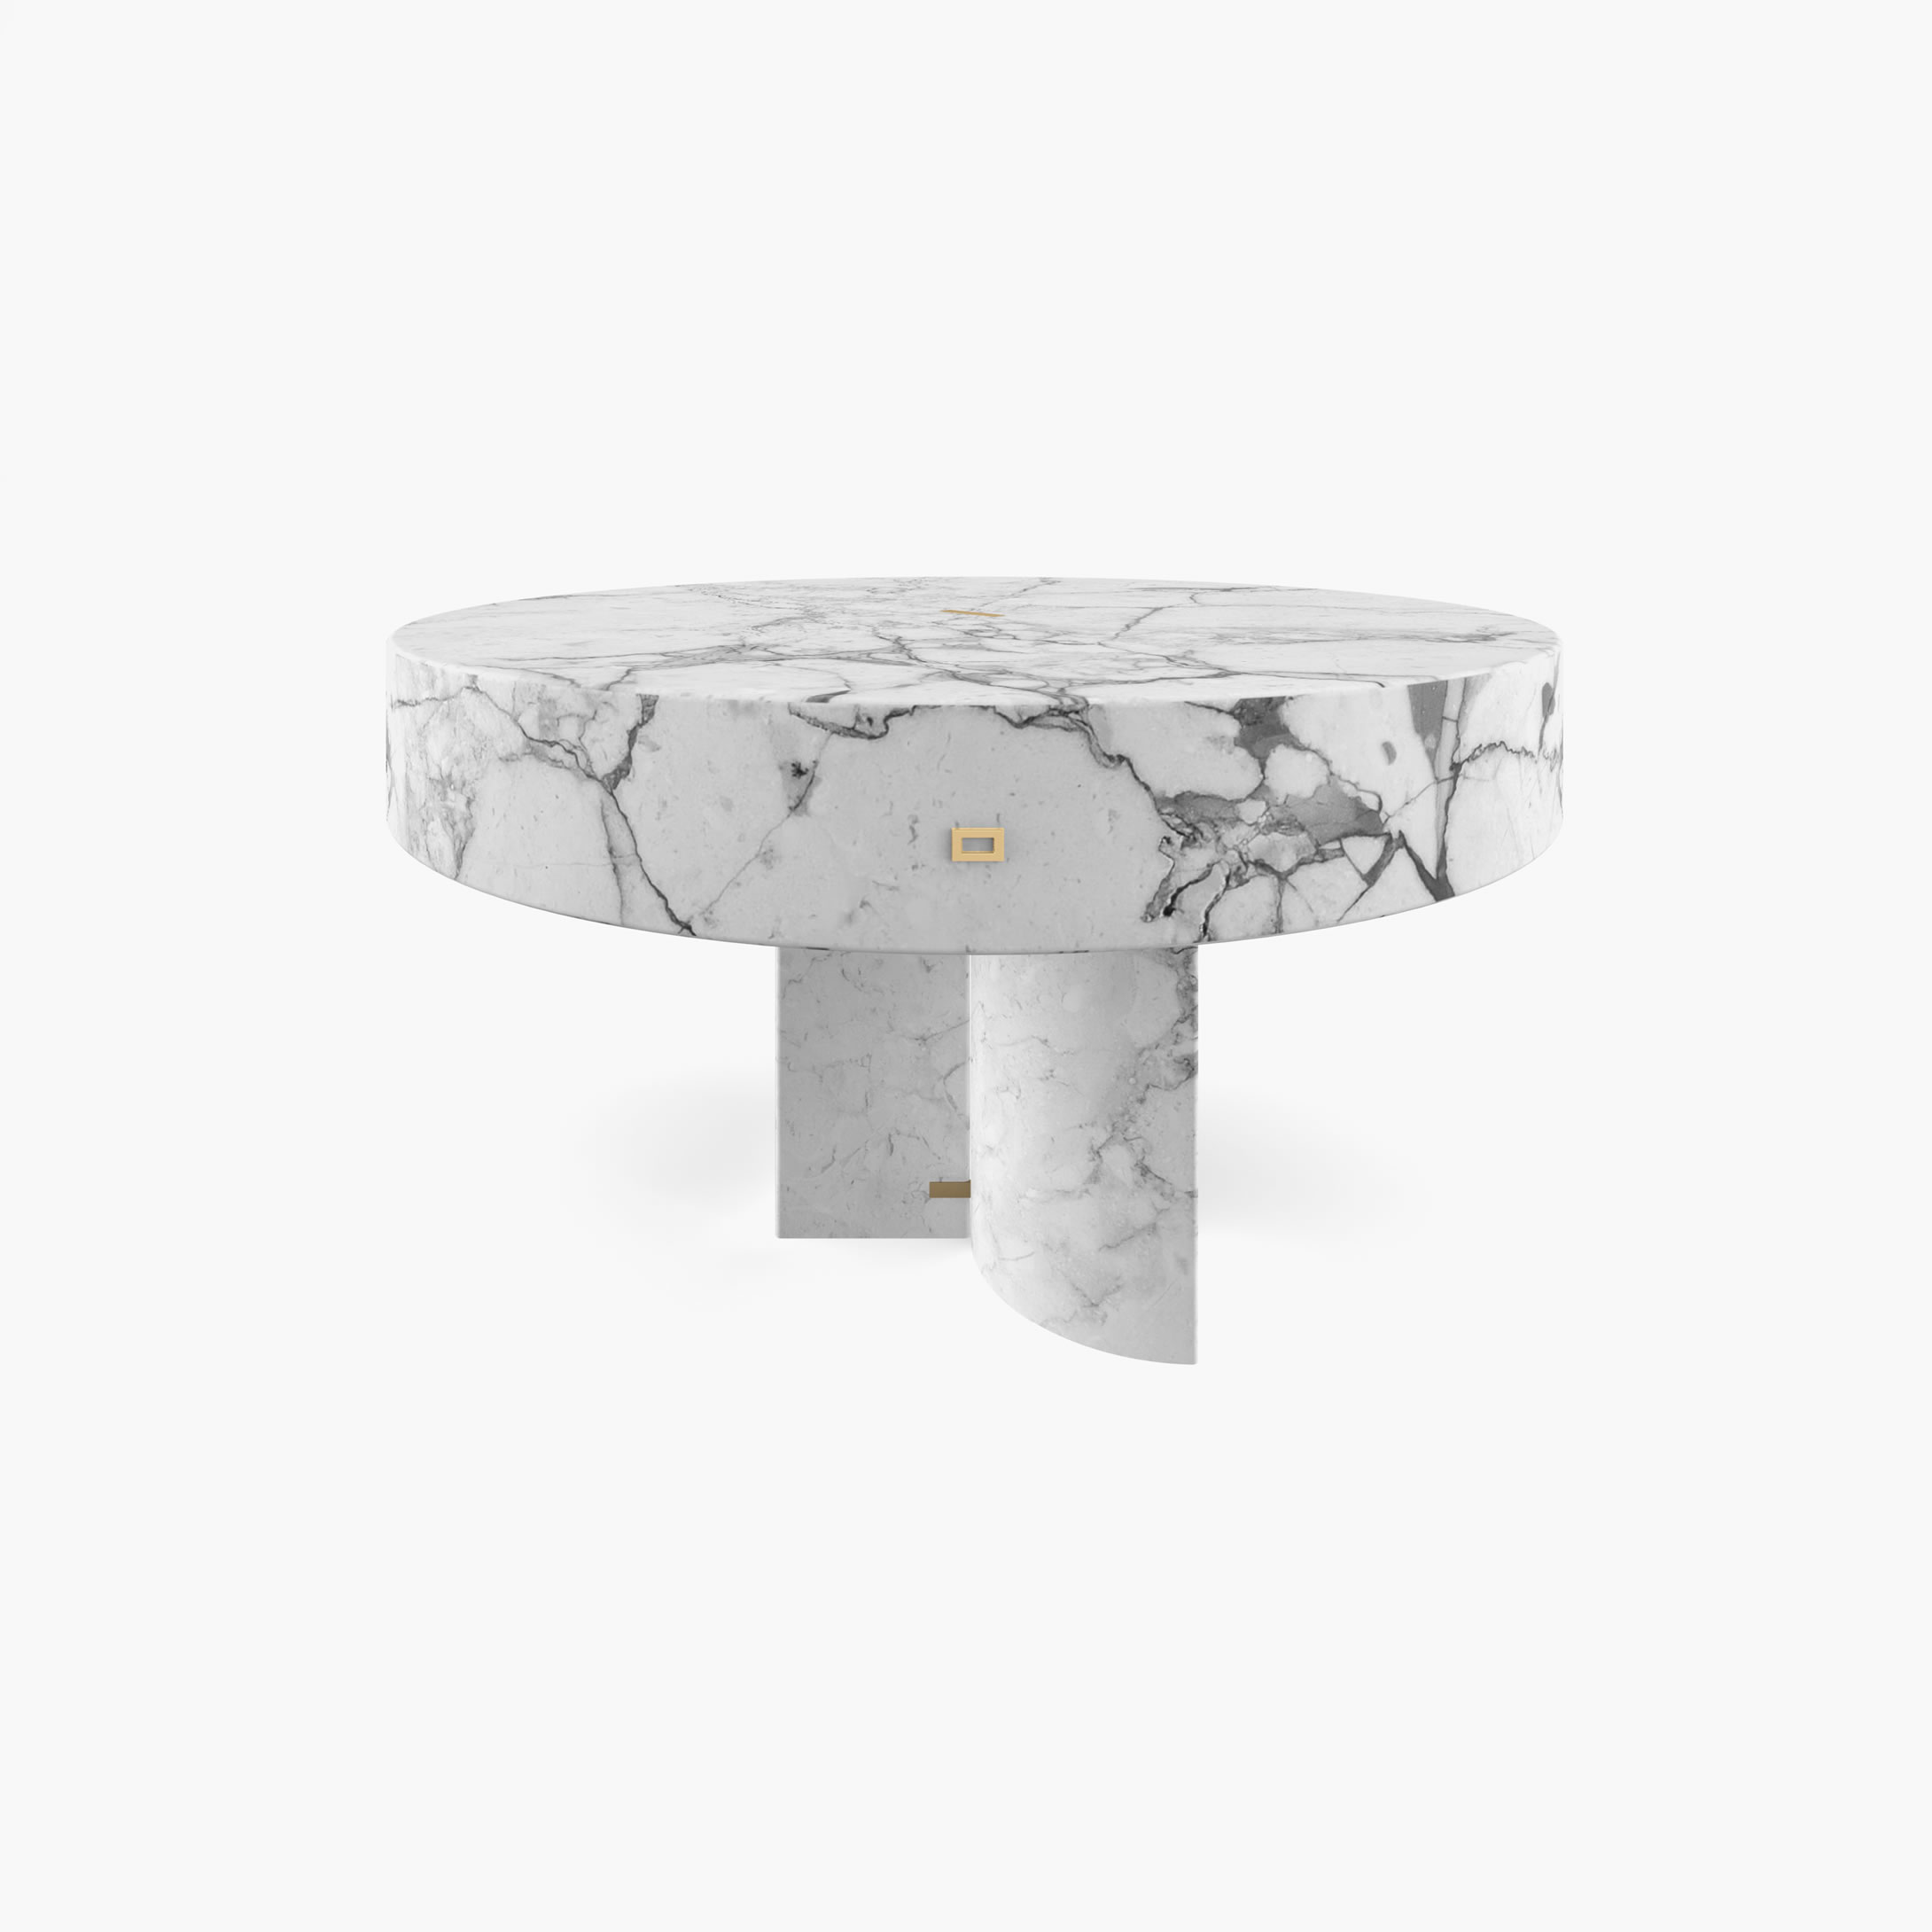 Beistelltisch rund Zylinder Quader Prisma Weiss Arabescato Marmor minimalistisch Wohnzimmer Innenarchitektur Beistelltische FS 127 FELIX SCHWAKE